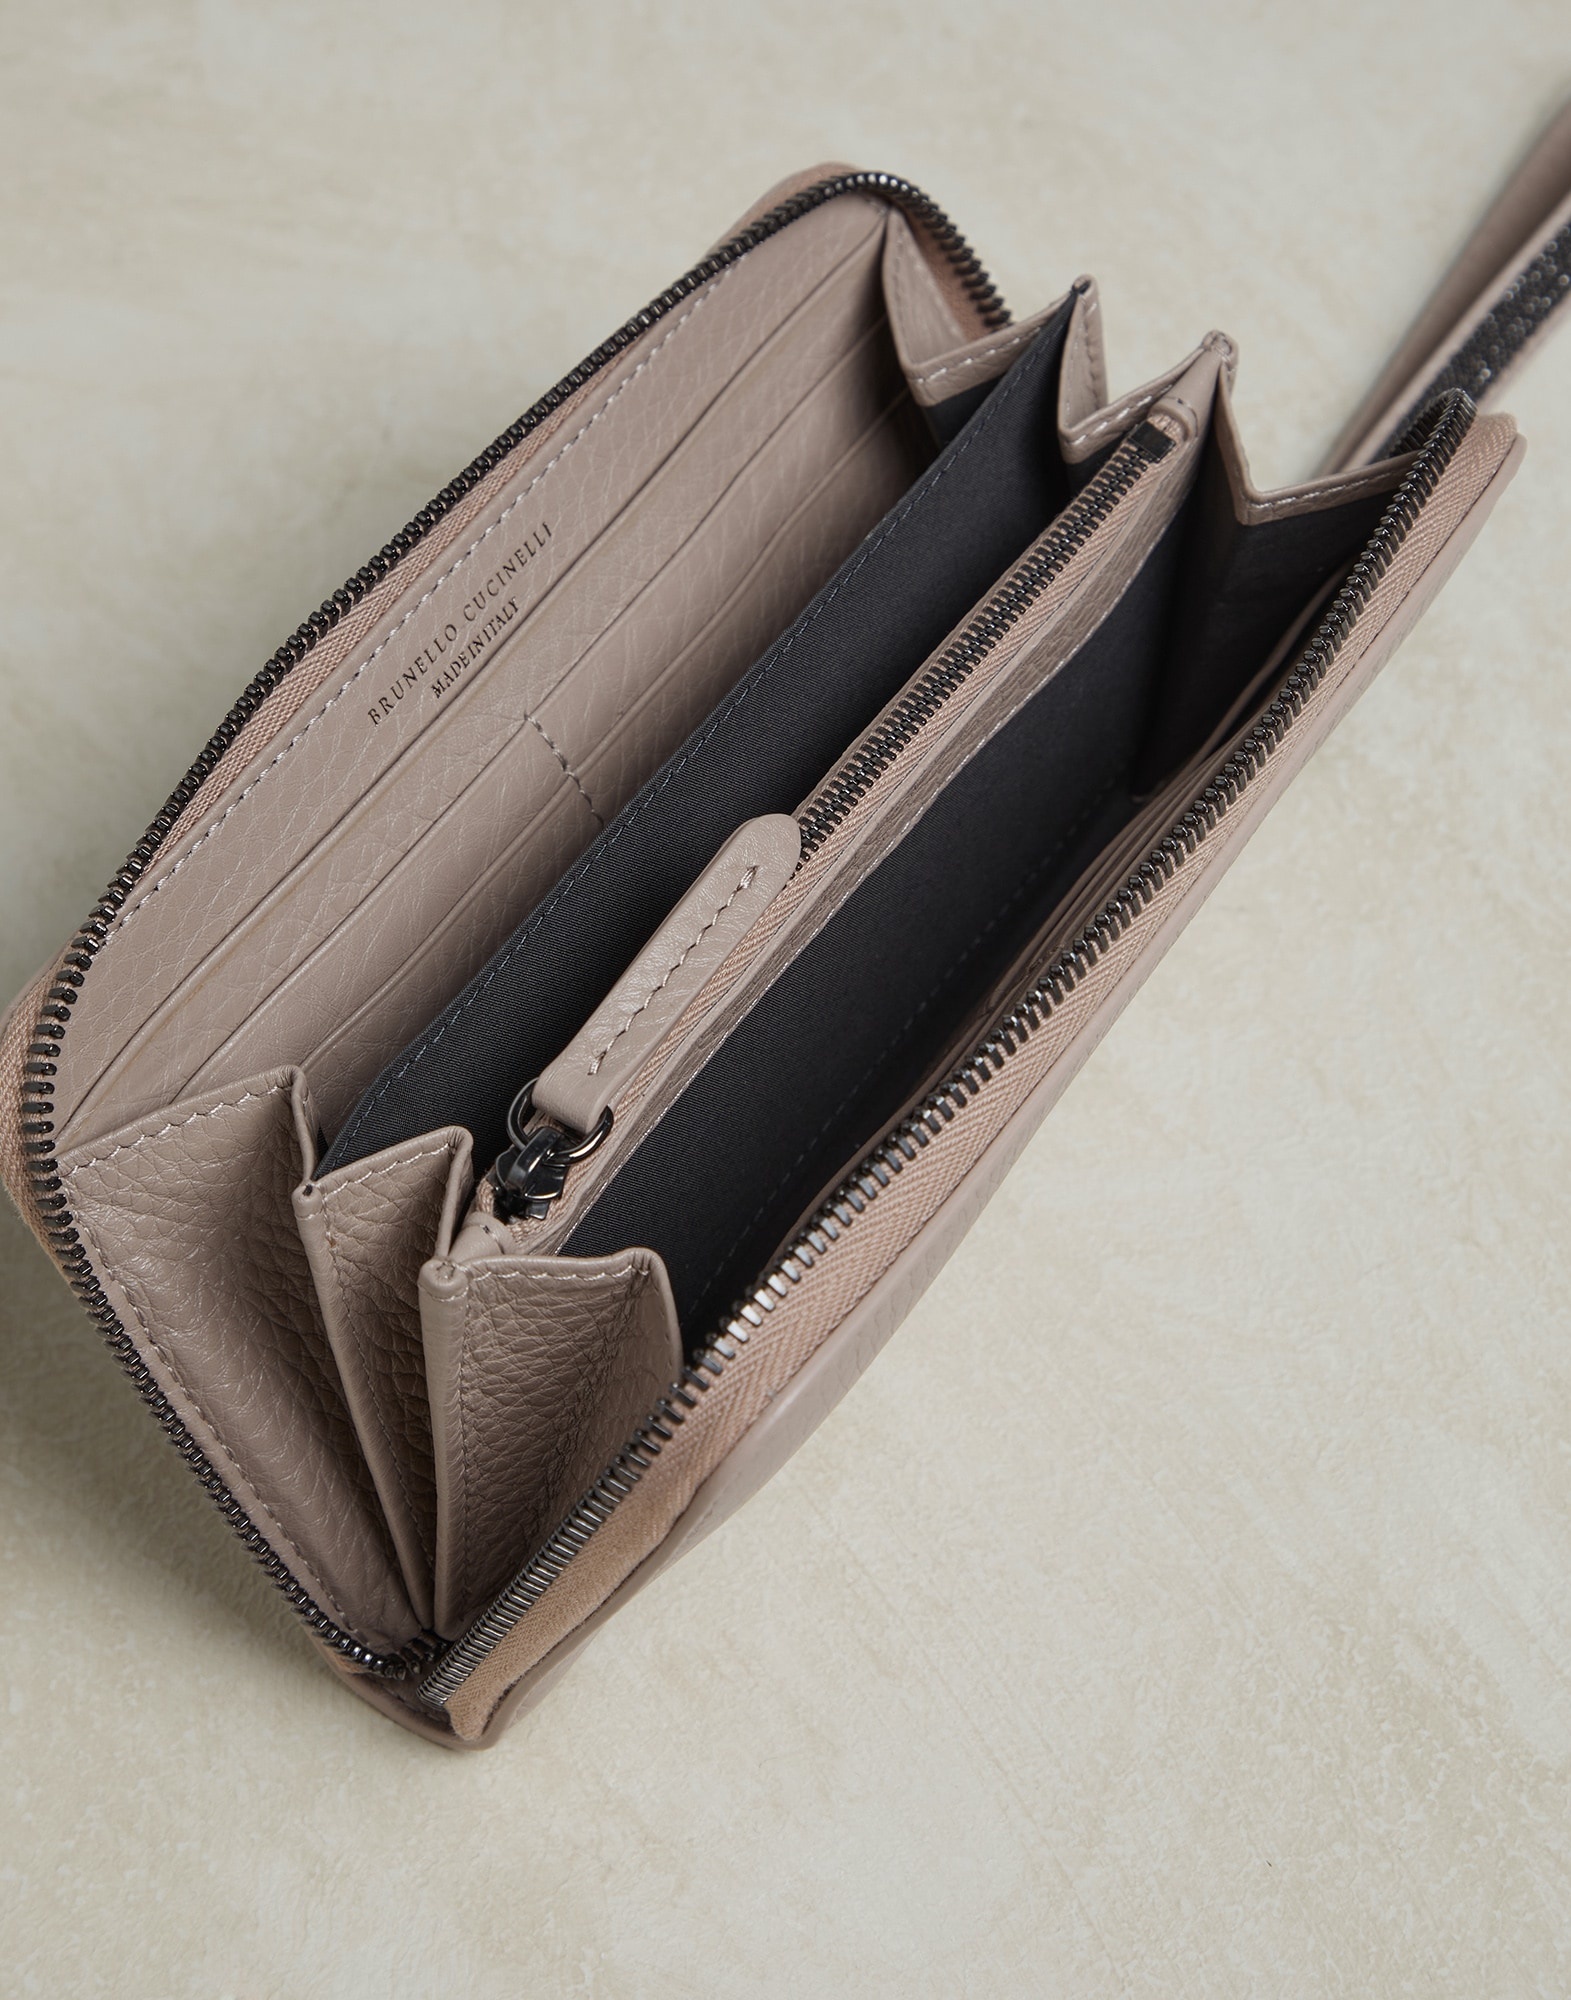 Texture calfskin wallet with precious zipper pull - 5